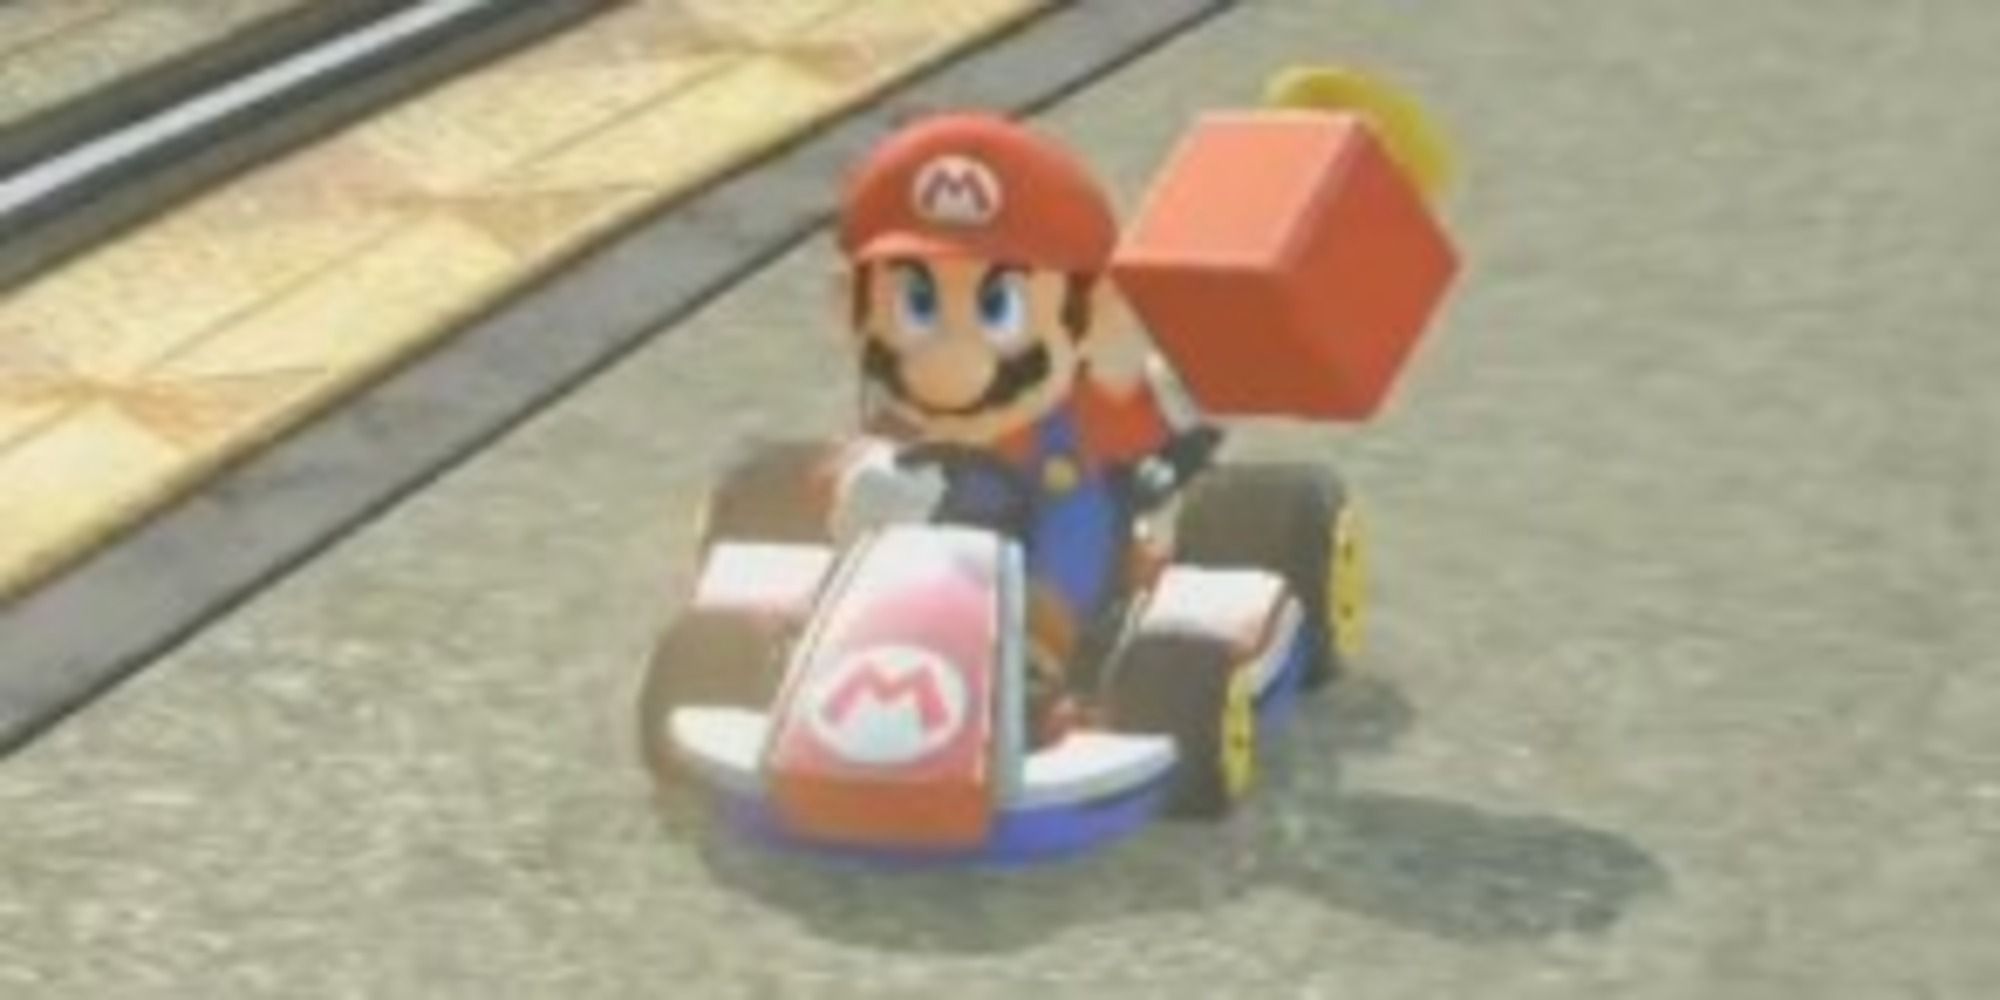 Mario Kart 8 Mario holding a Super Horn